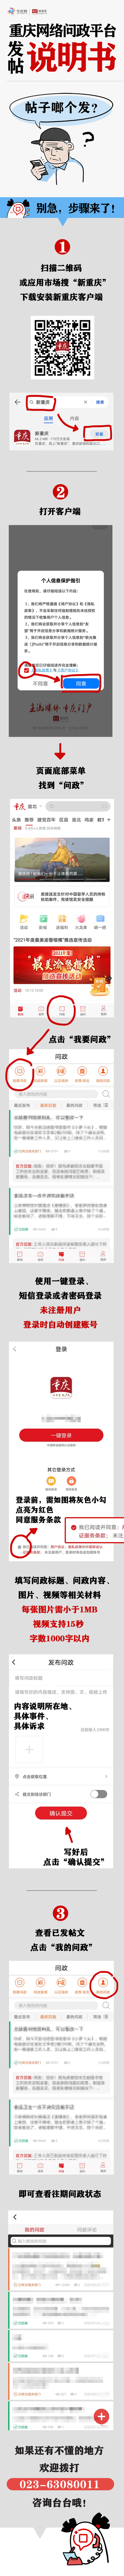 重庆网络问政平台发帖说明书